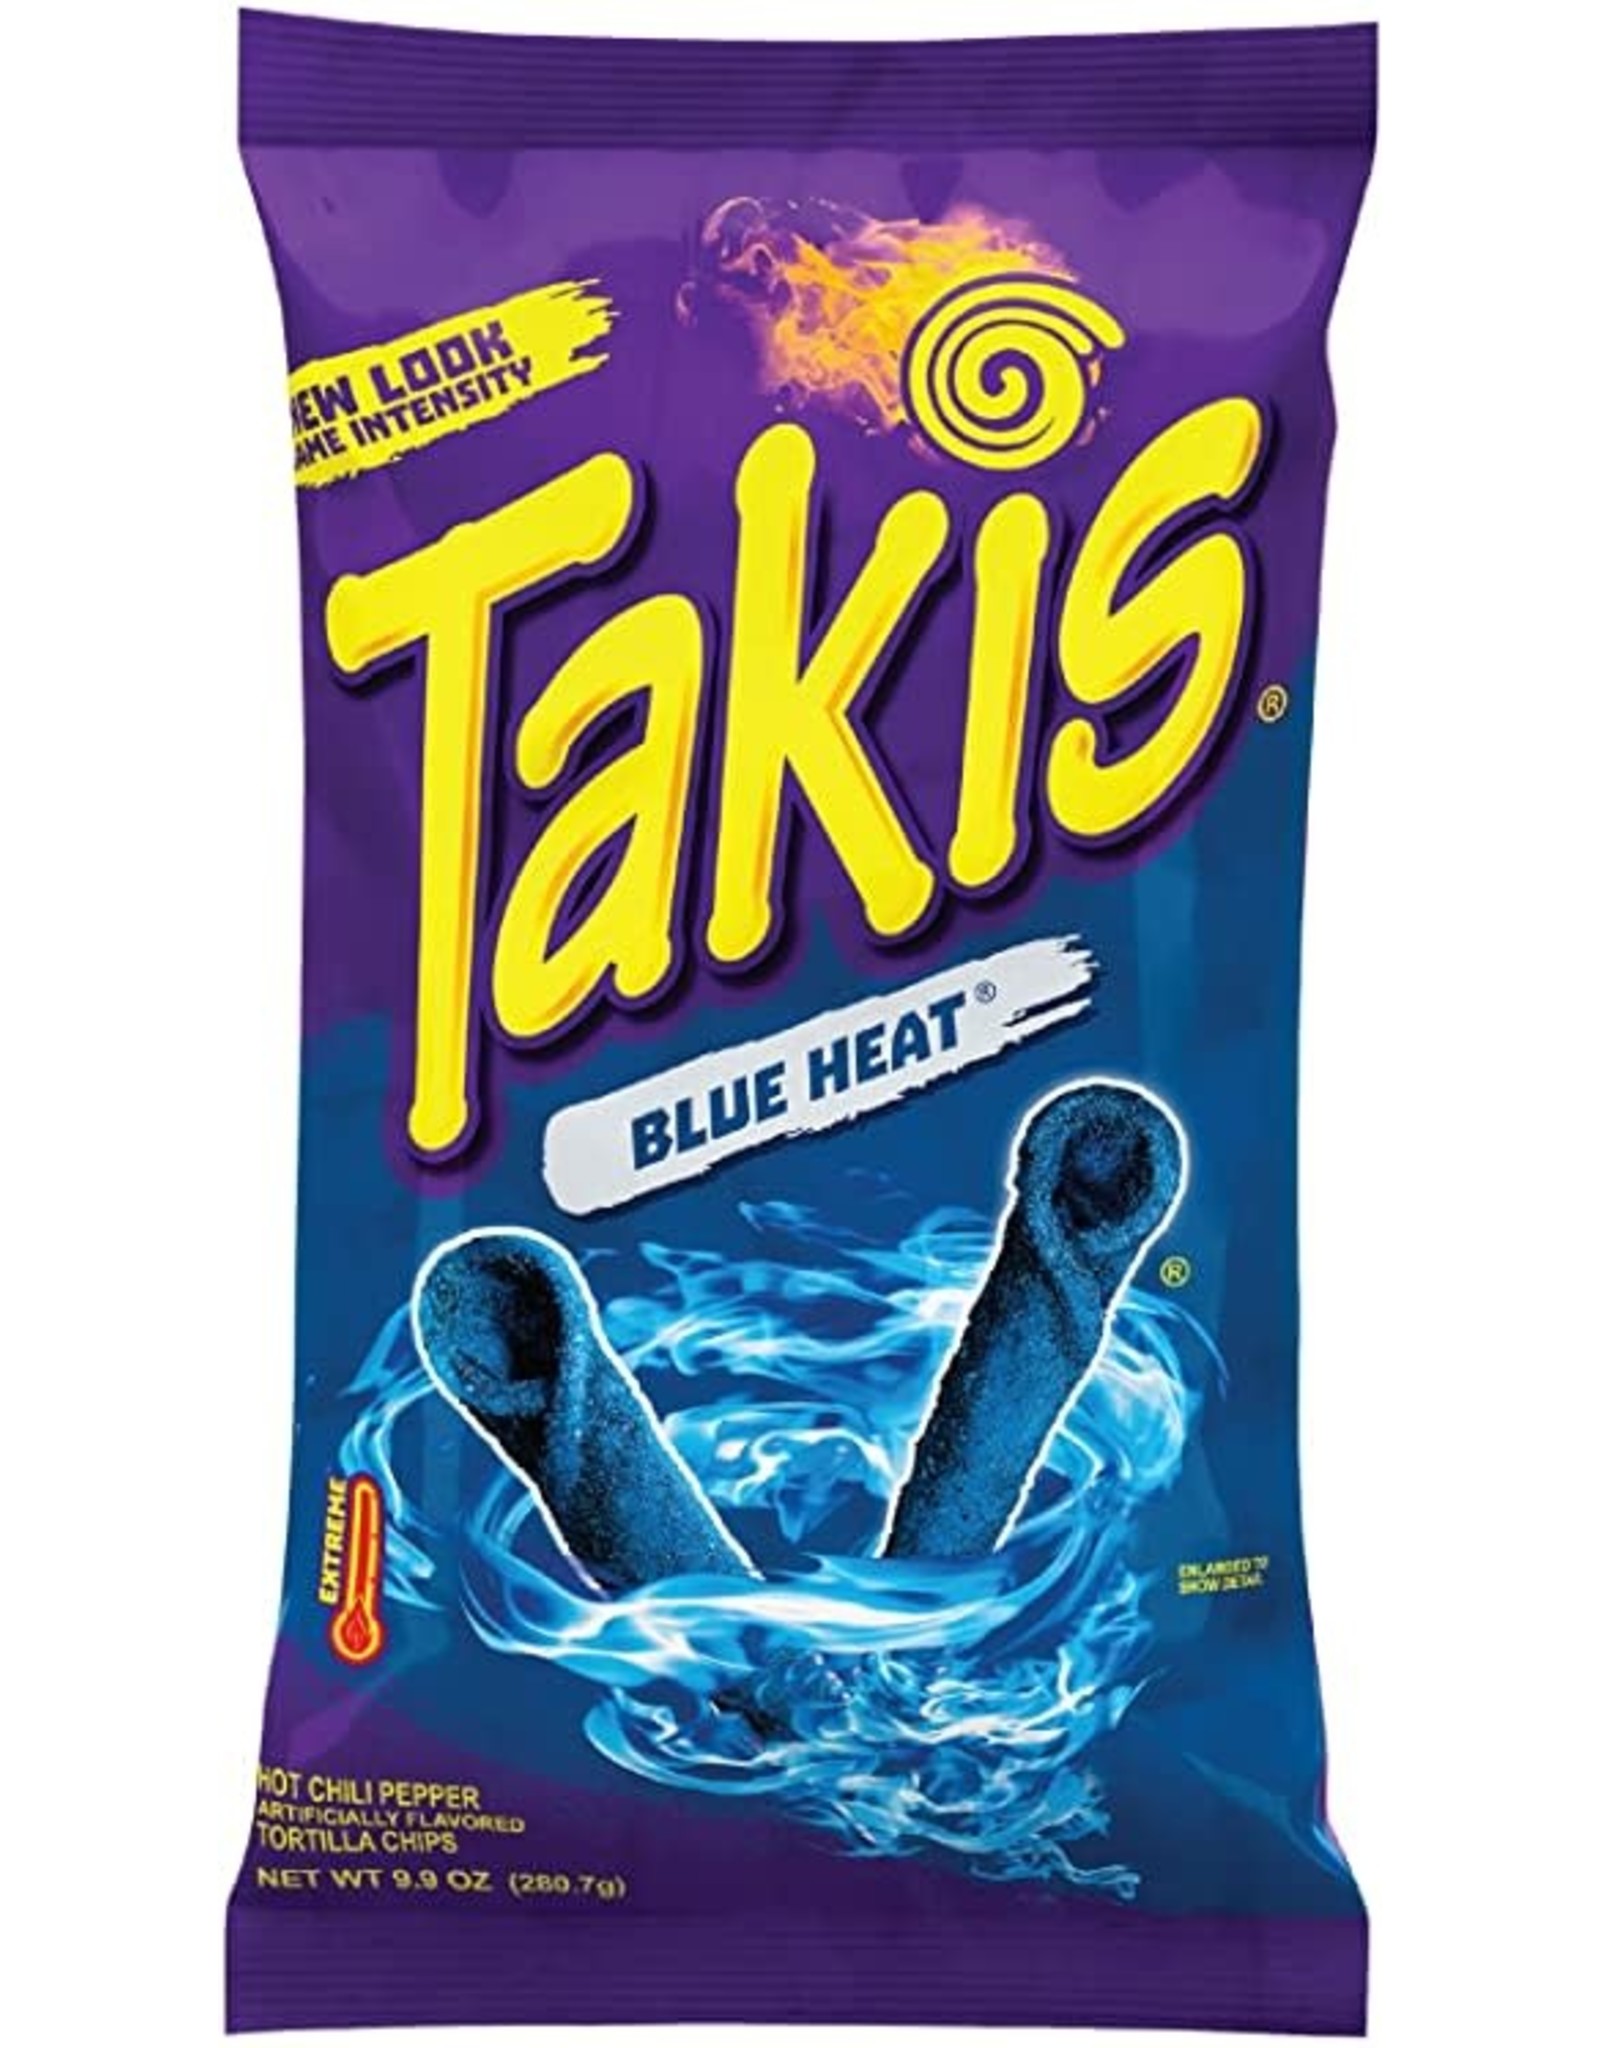 TAKIS TAKIS BLUE HEAT